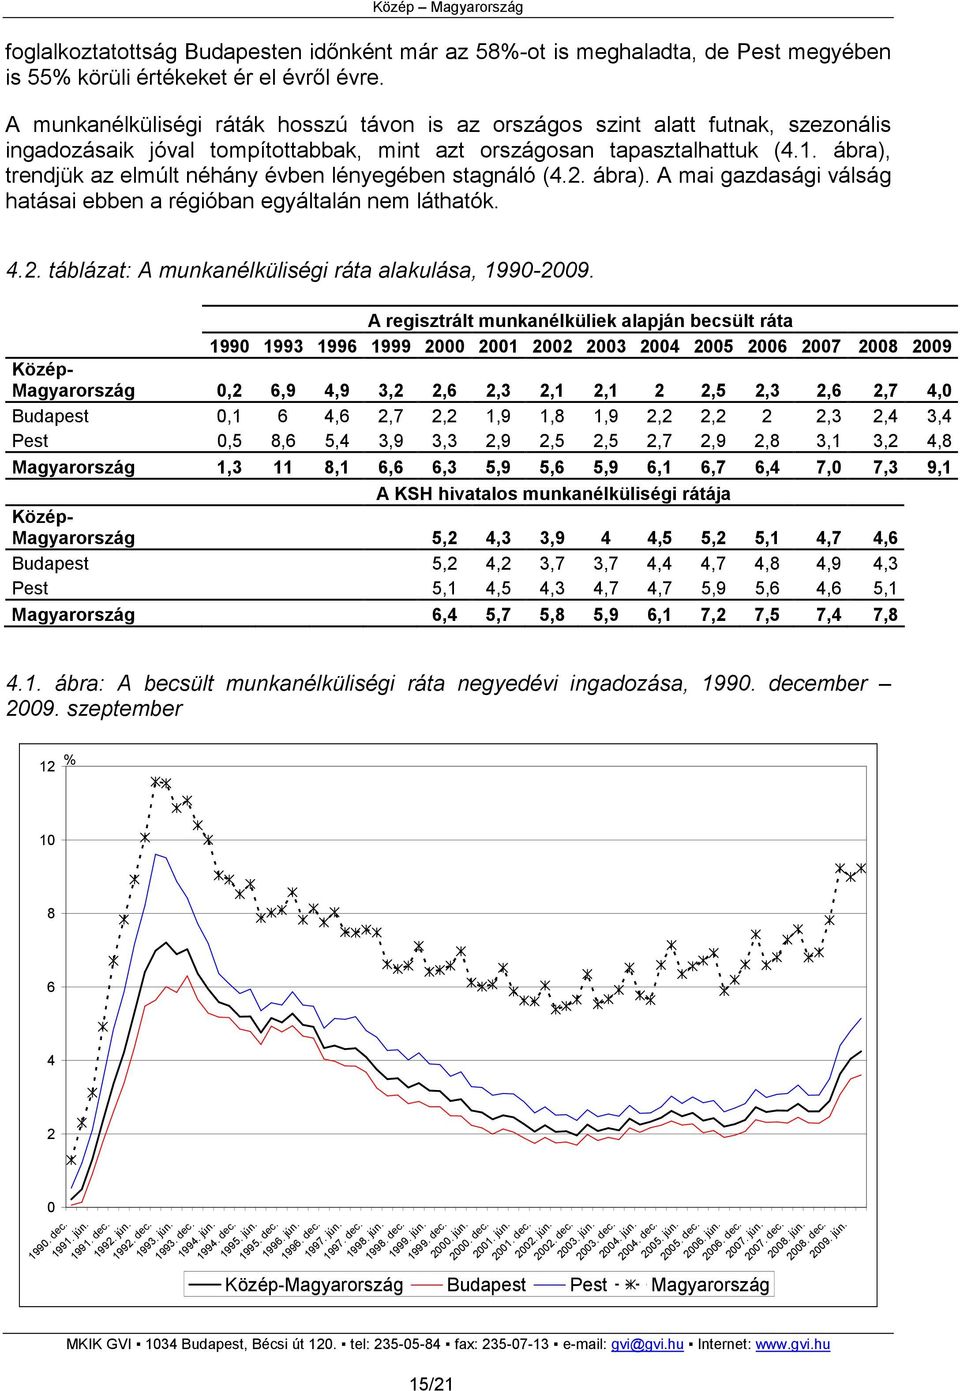 ábra), trendjük az elmúlt néhány évben lényegében stagnáló (4.2. ábra). A mai gazdasági válság hatásai ebben a régióban egyáltalán nem láthatók. 4.2. táblázat: A munkanélküliségi ráta alakulása, 1990-2009.